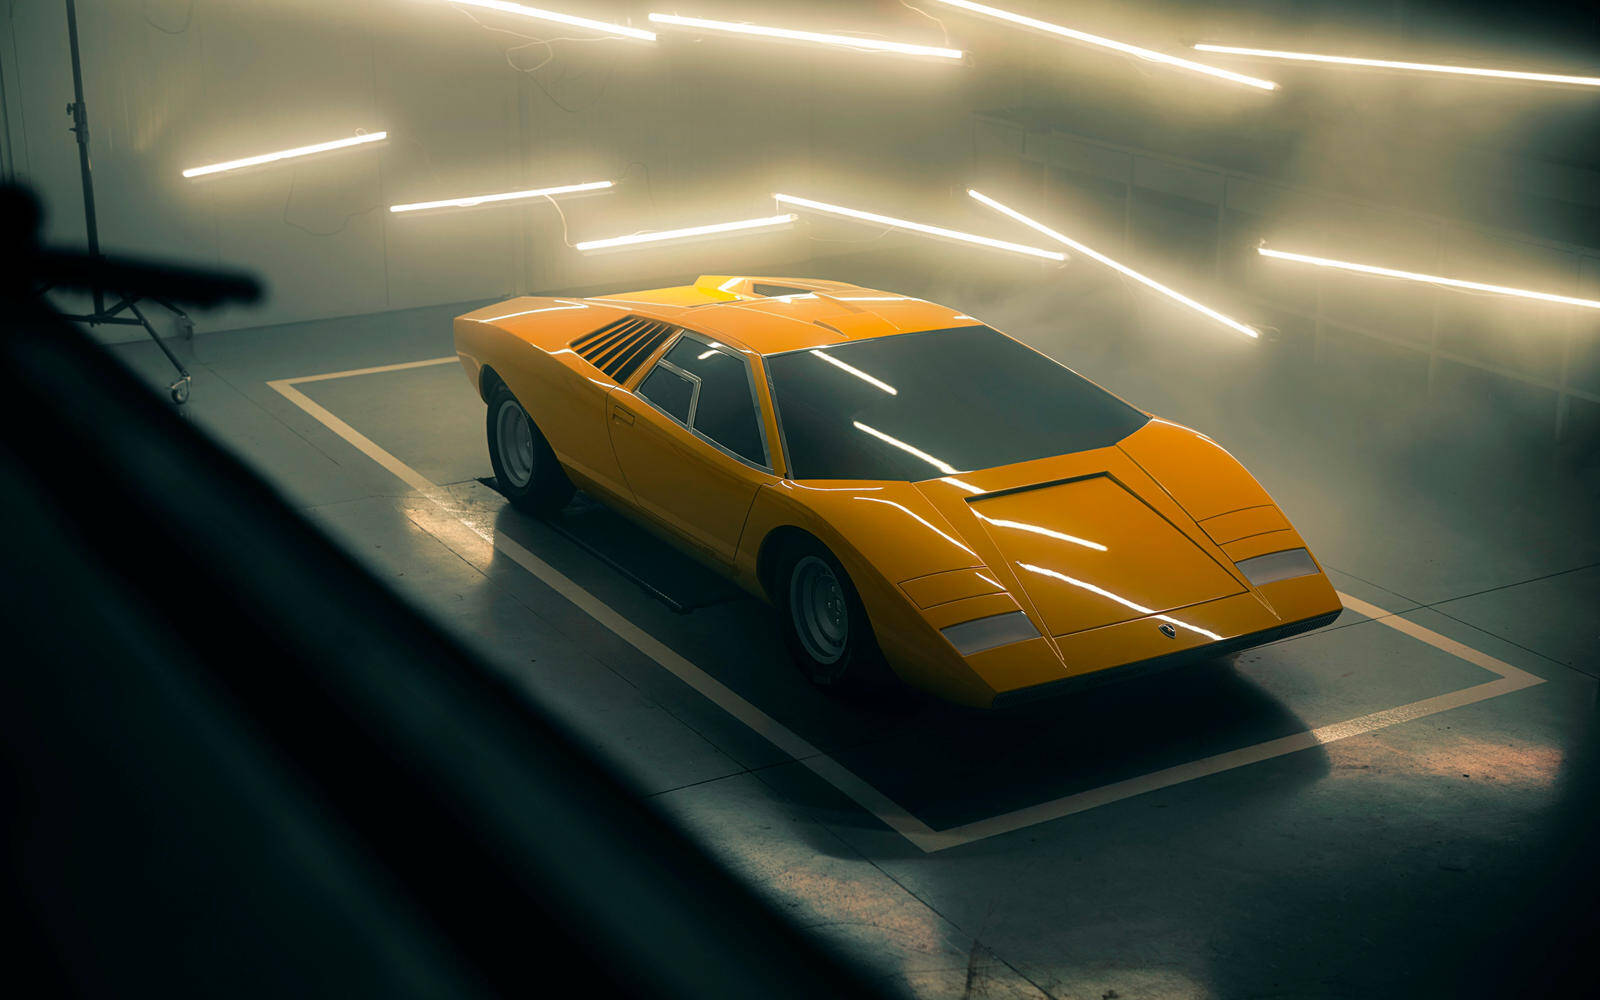 Lamborghini recrée la Countach LP 500 originale et elle est sublime 490129-lamborghini-recree-la-countach-lp-500-originale-et-elle-est-sublime